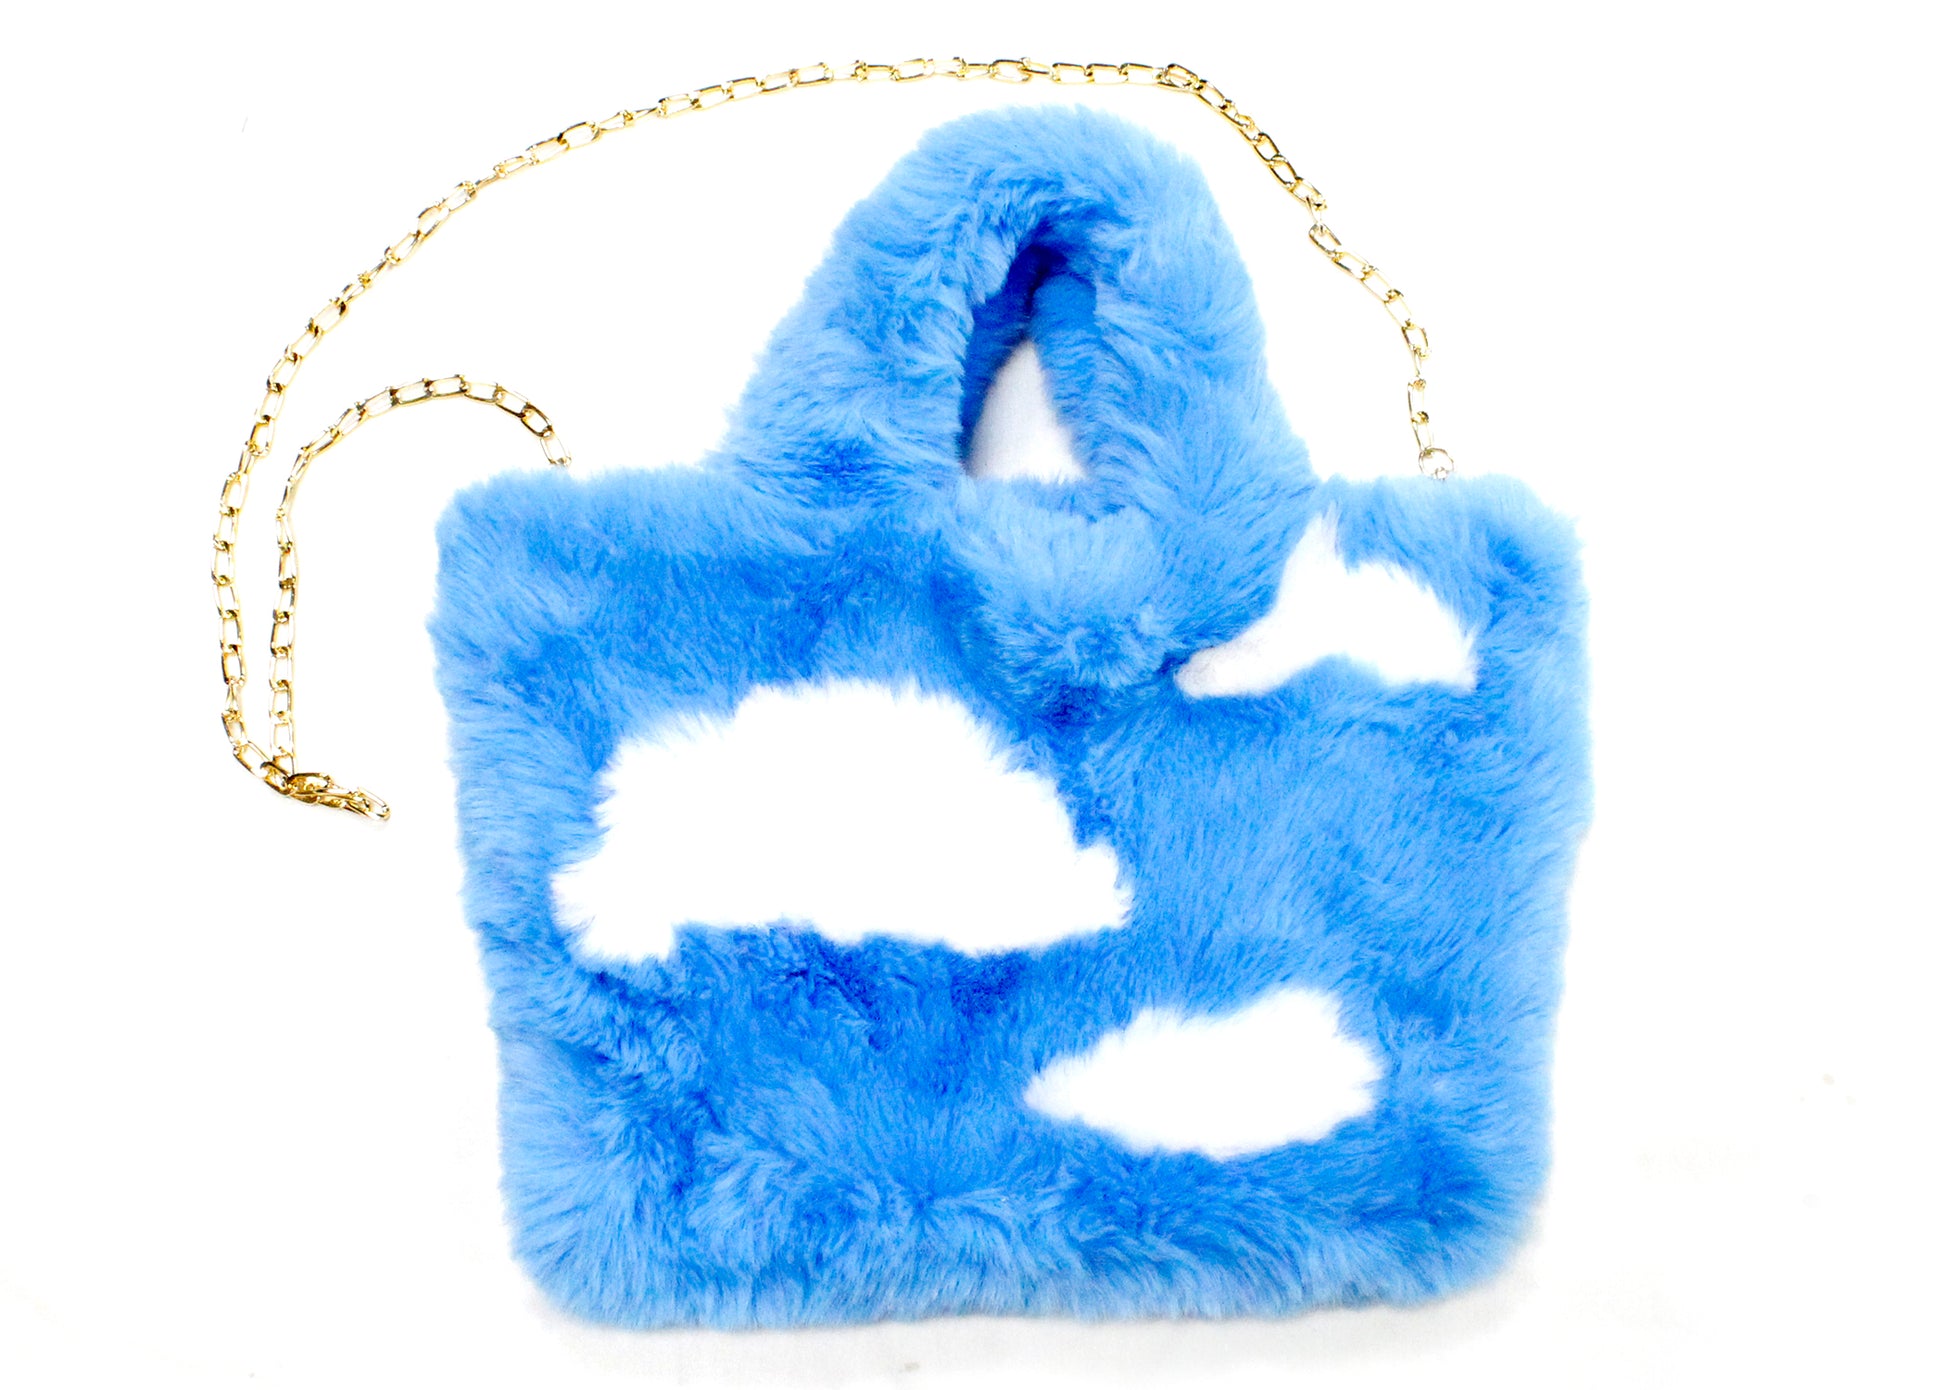 Louisdog Cloud Studio Bag w/Inner Bag - Funny Fur